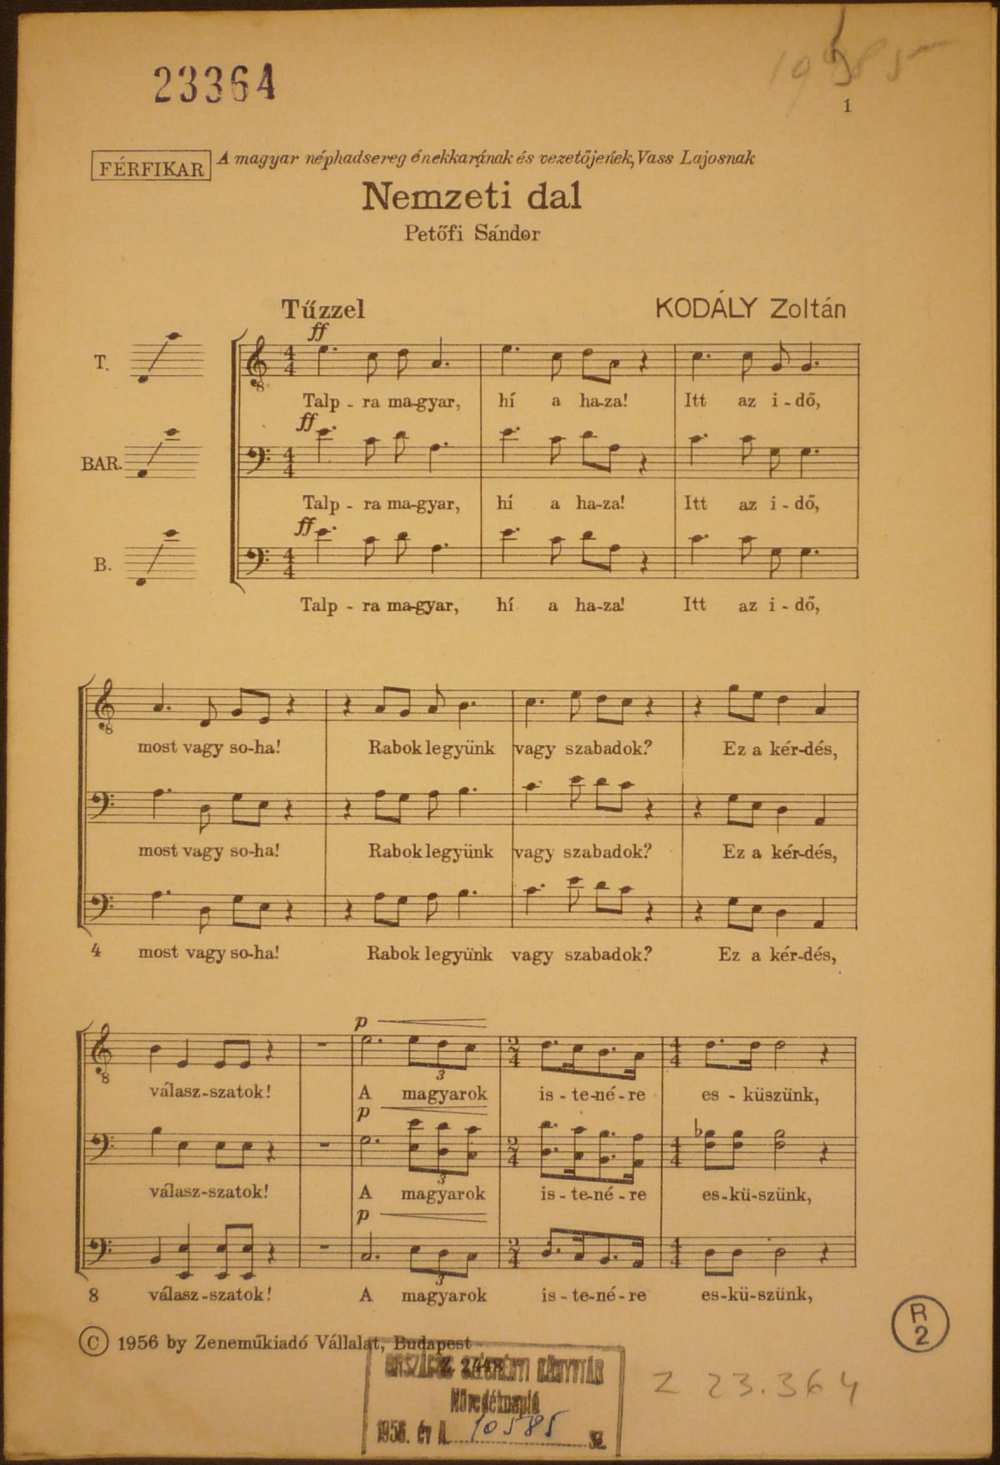 Kodály Zoltán: Nemzeti dal, Budapest, Zeneműkiadó Vállalat, 1956. – Színháztörténeti és Zeneműtár, Z 23.364